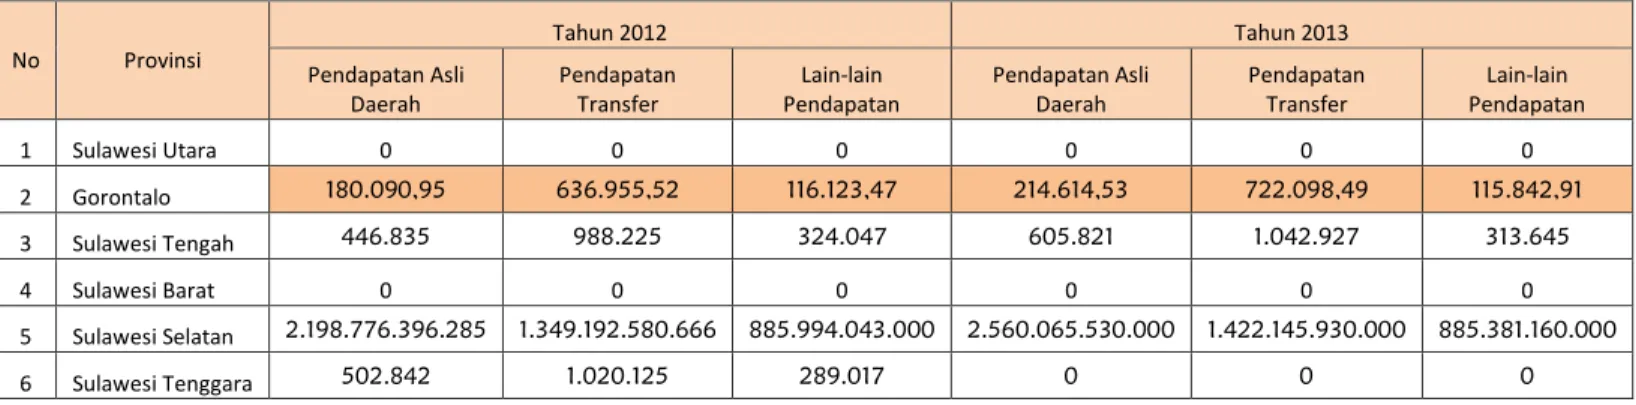 Tabel Realisasi PAD Di Pulau Sulawesi Tahun 2012 - 2013 